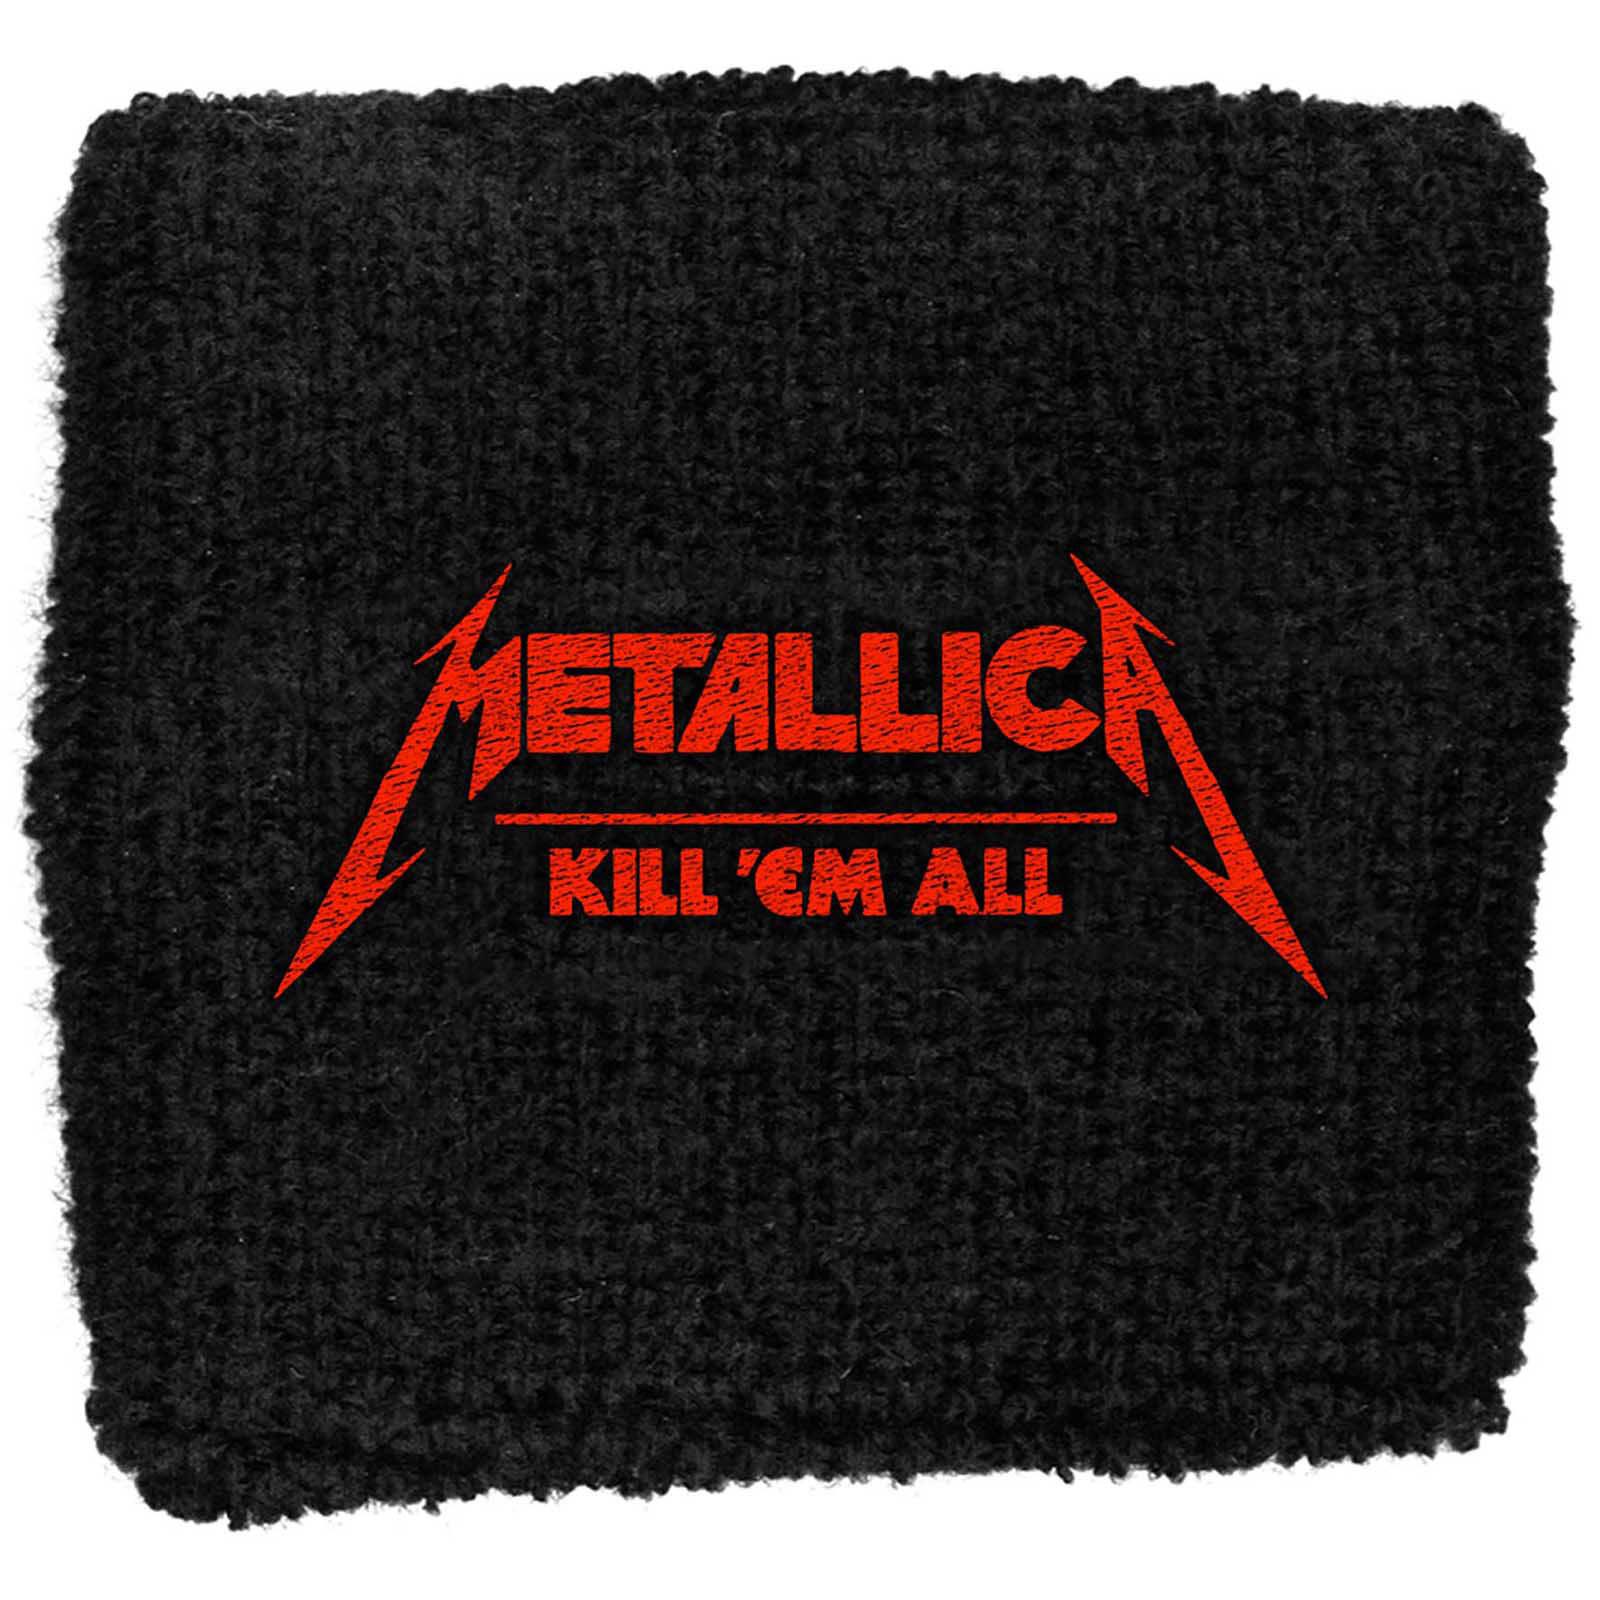 (メタリカ) Metallica オフィシャル商品 ユニセックス Kick ´Em All リストバンド スエットバンド 【海..